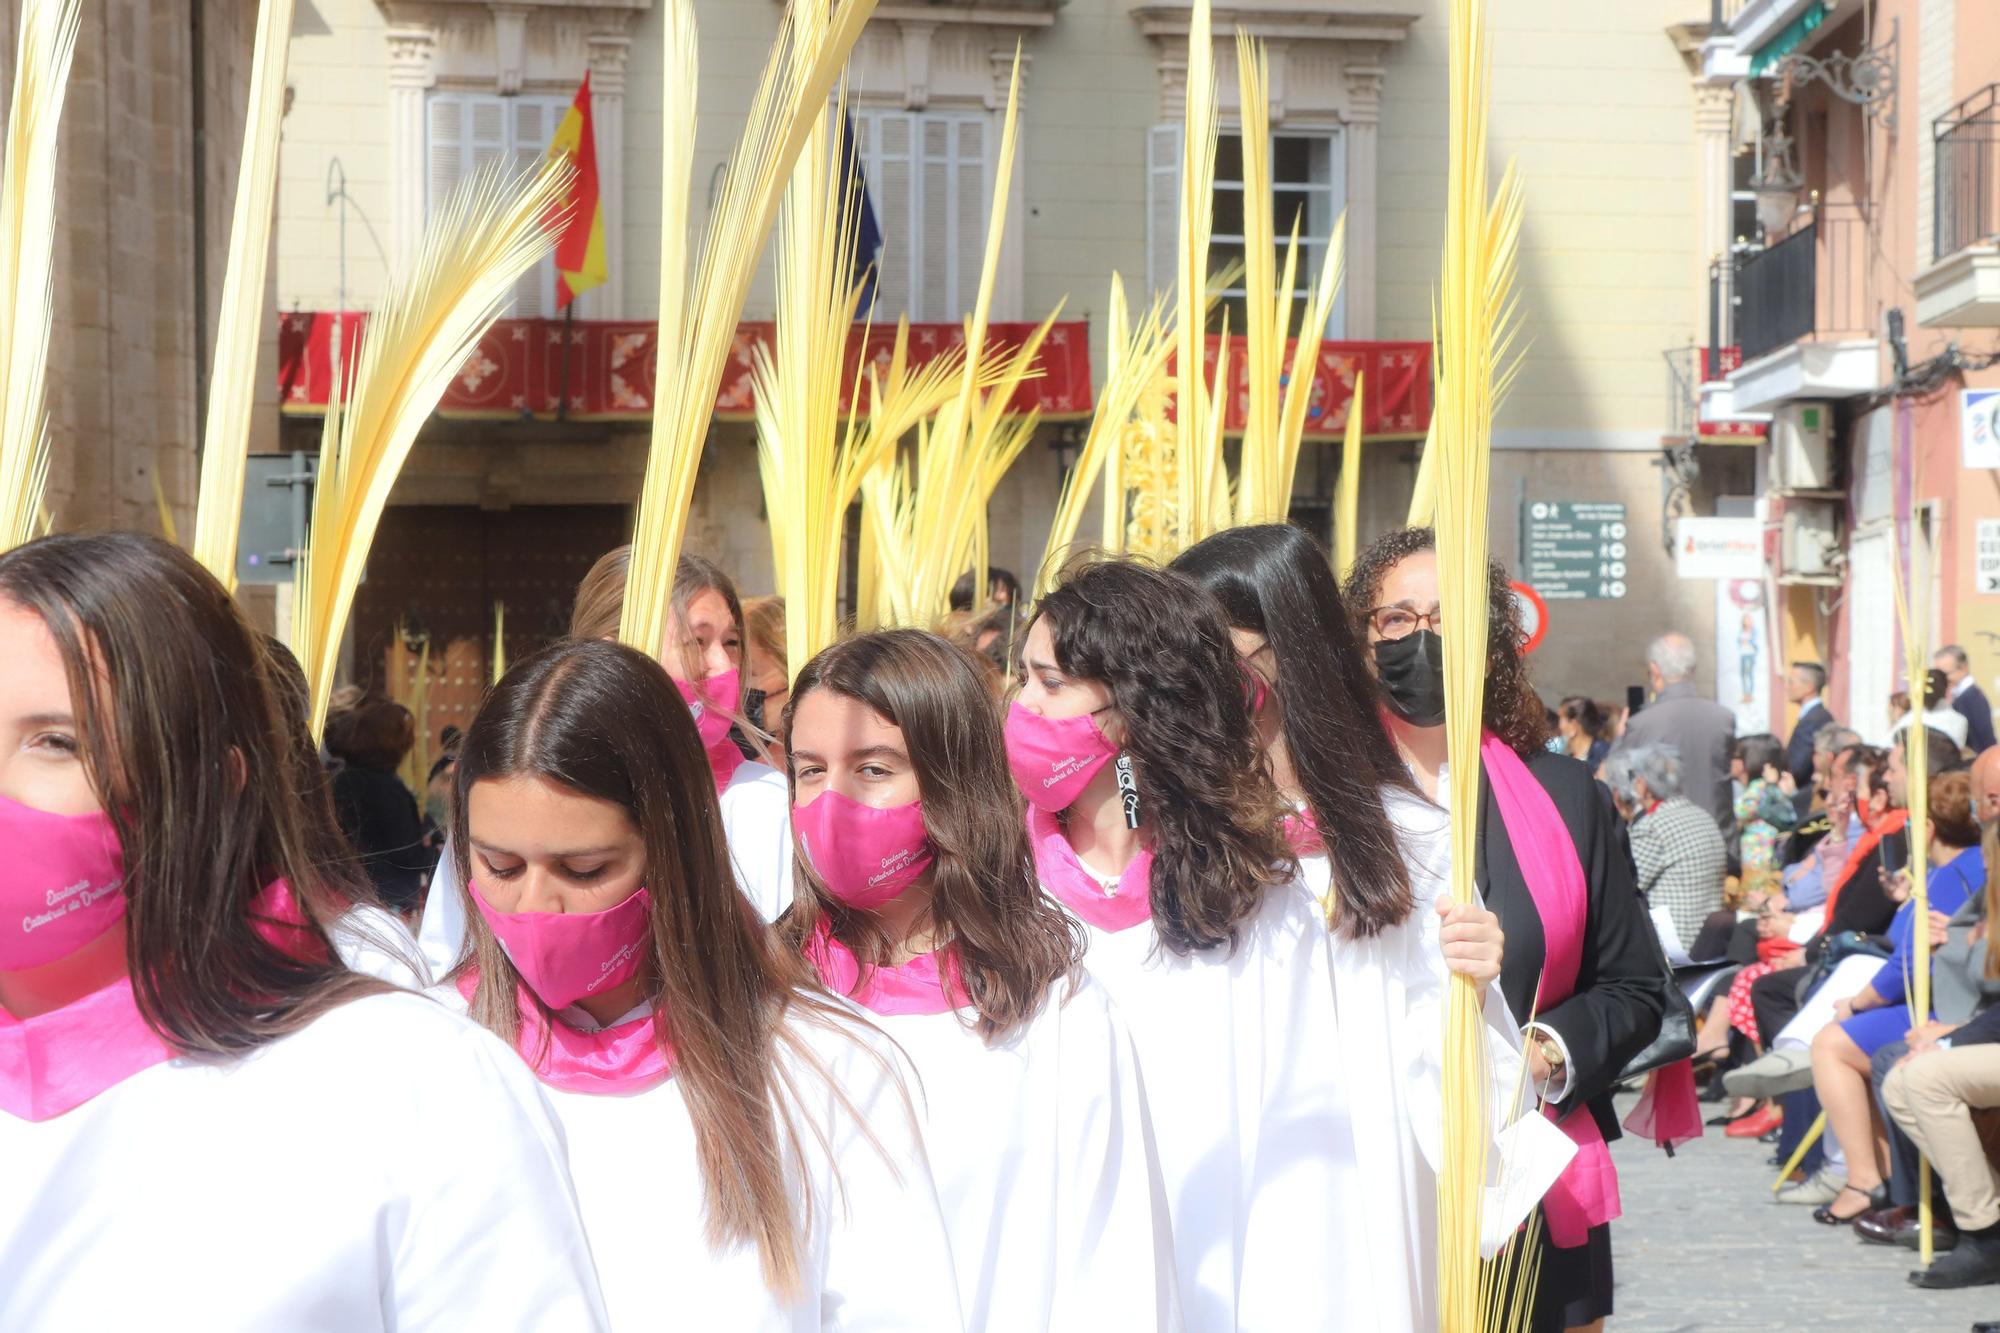 El obispo Munilla preside la procesión de las Palmas en Orihuela